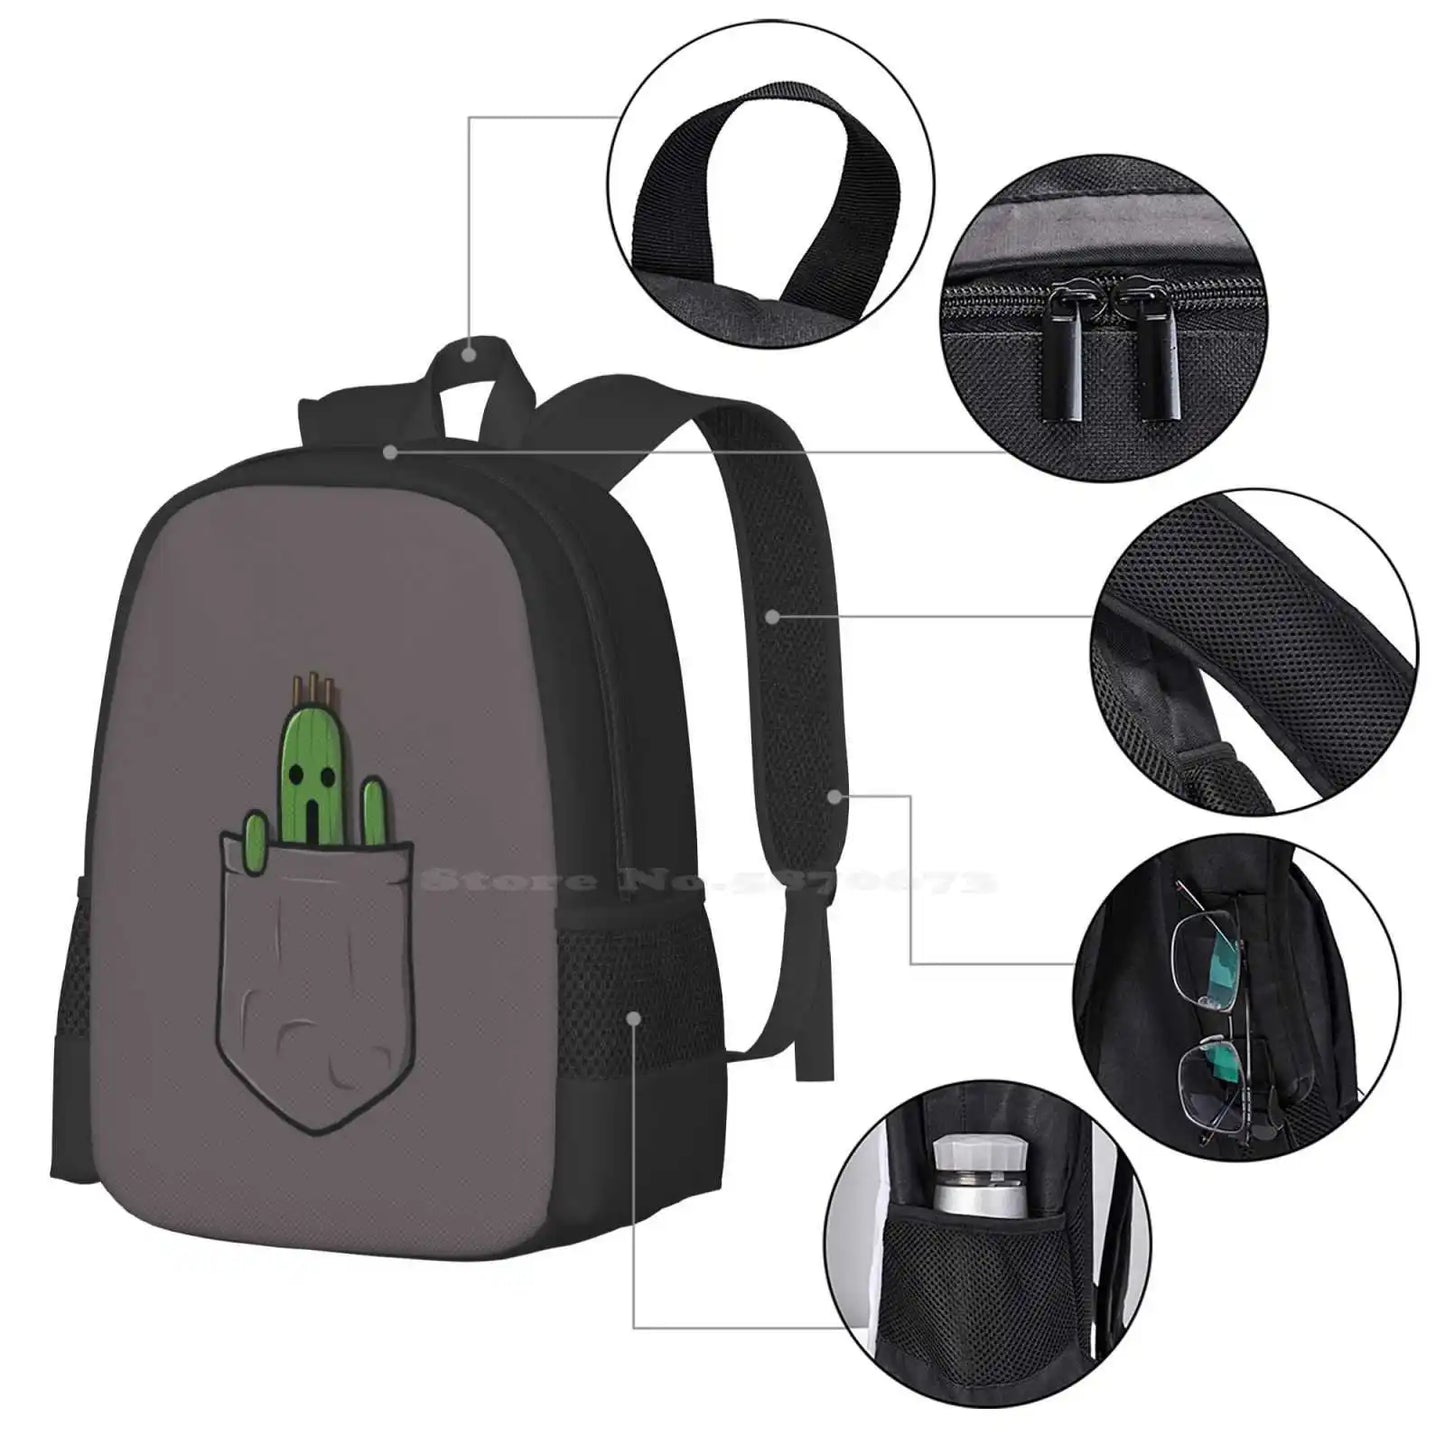 Mochila de bolsillo pequeño Cactuar para estudiantes, escuela, portátil, bolsa de viaje, Cactuar Final Fantasy Cactus Sabotender